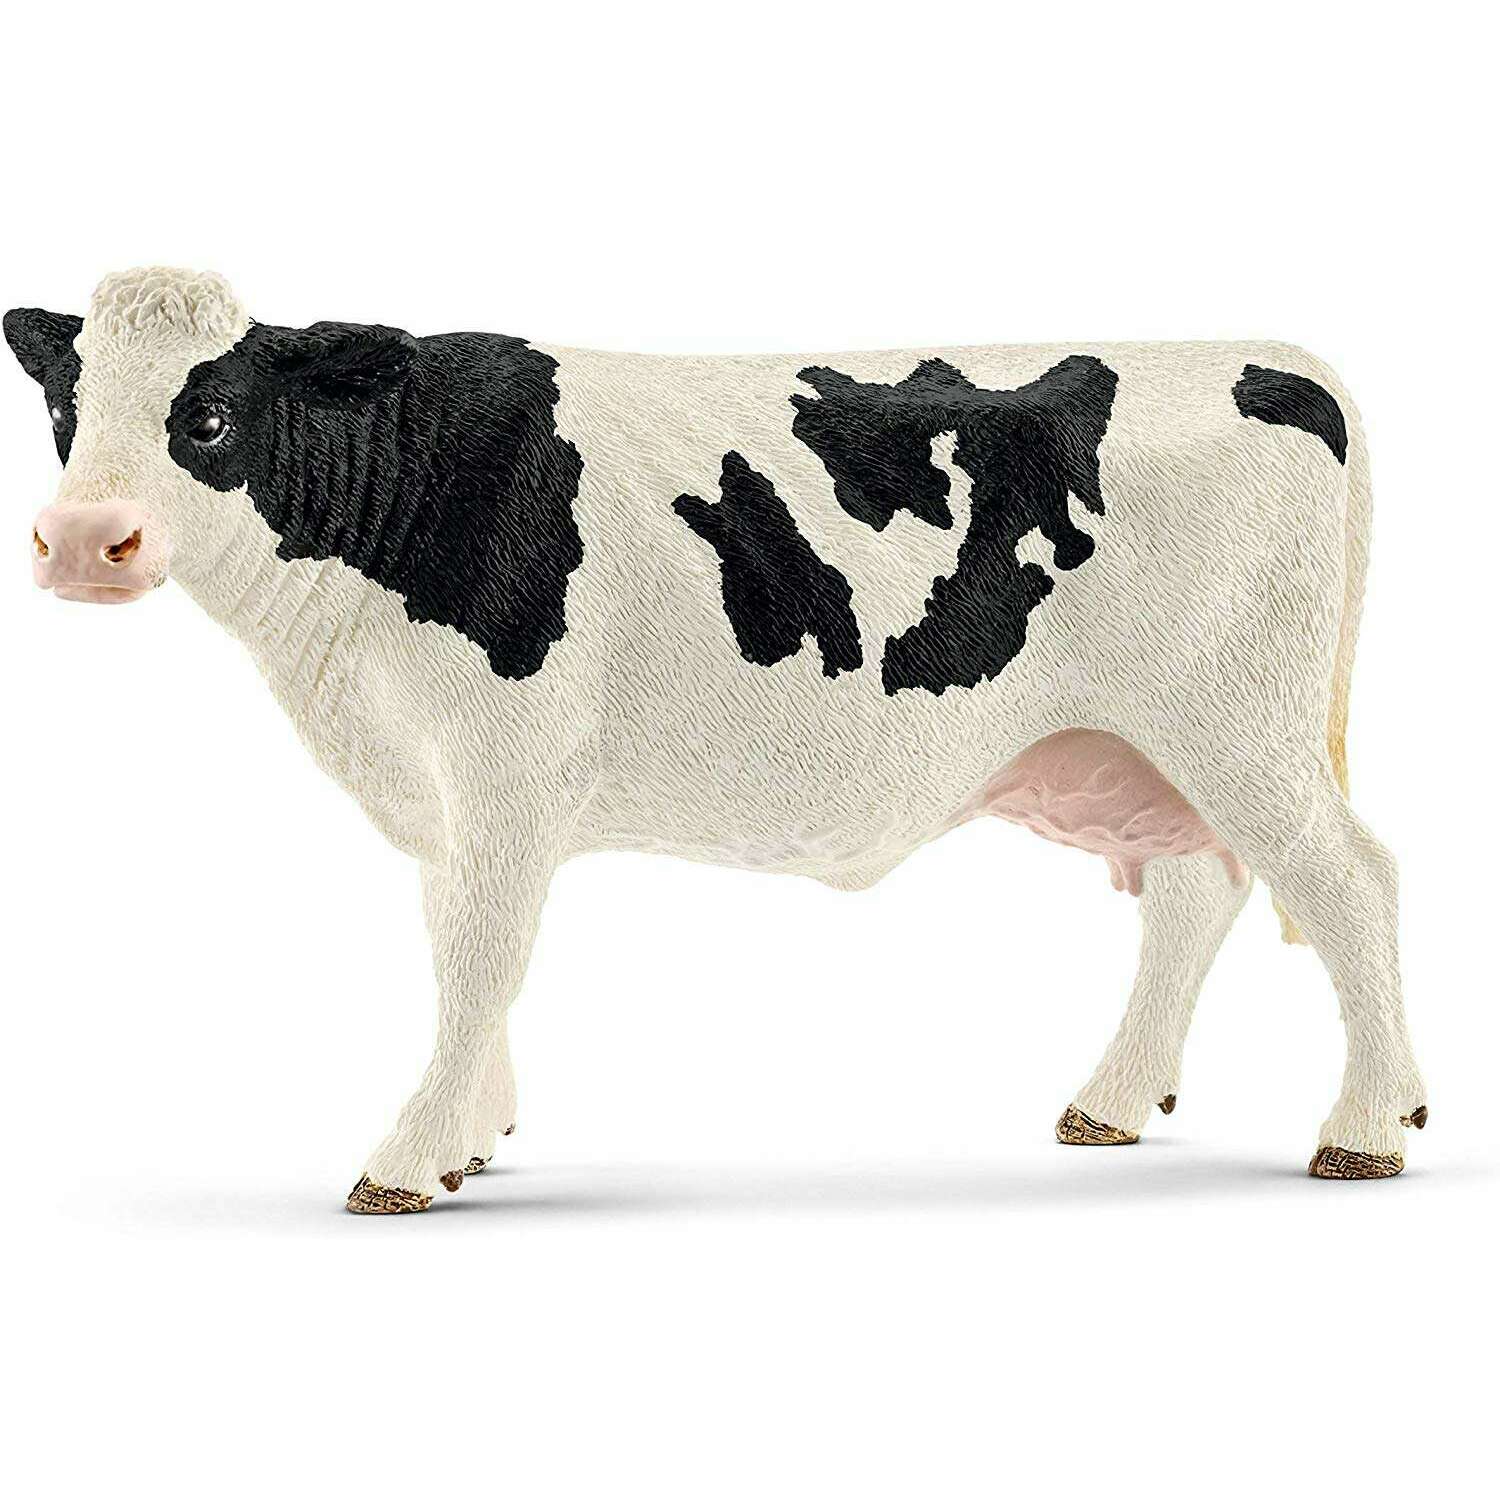 Toys N Tuck:Schleich 13797 Farm World Holstein Cow,Schleich